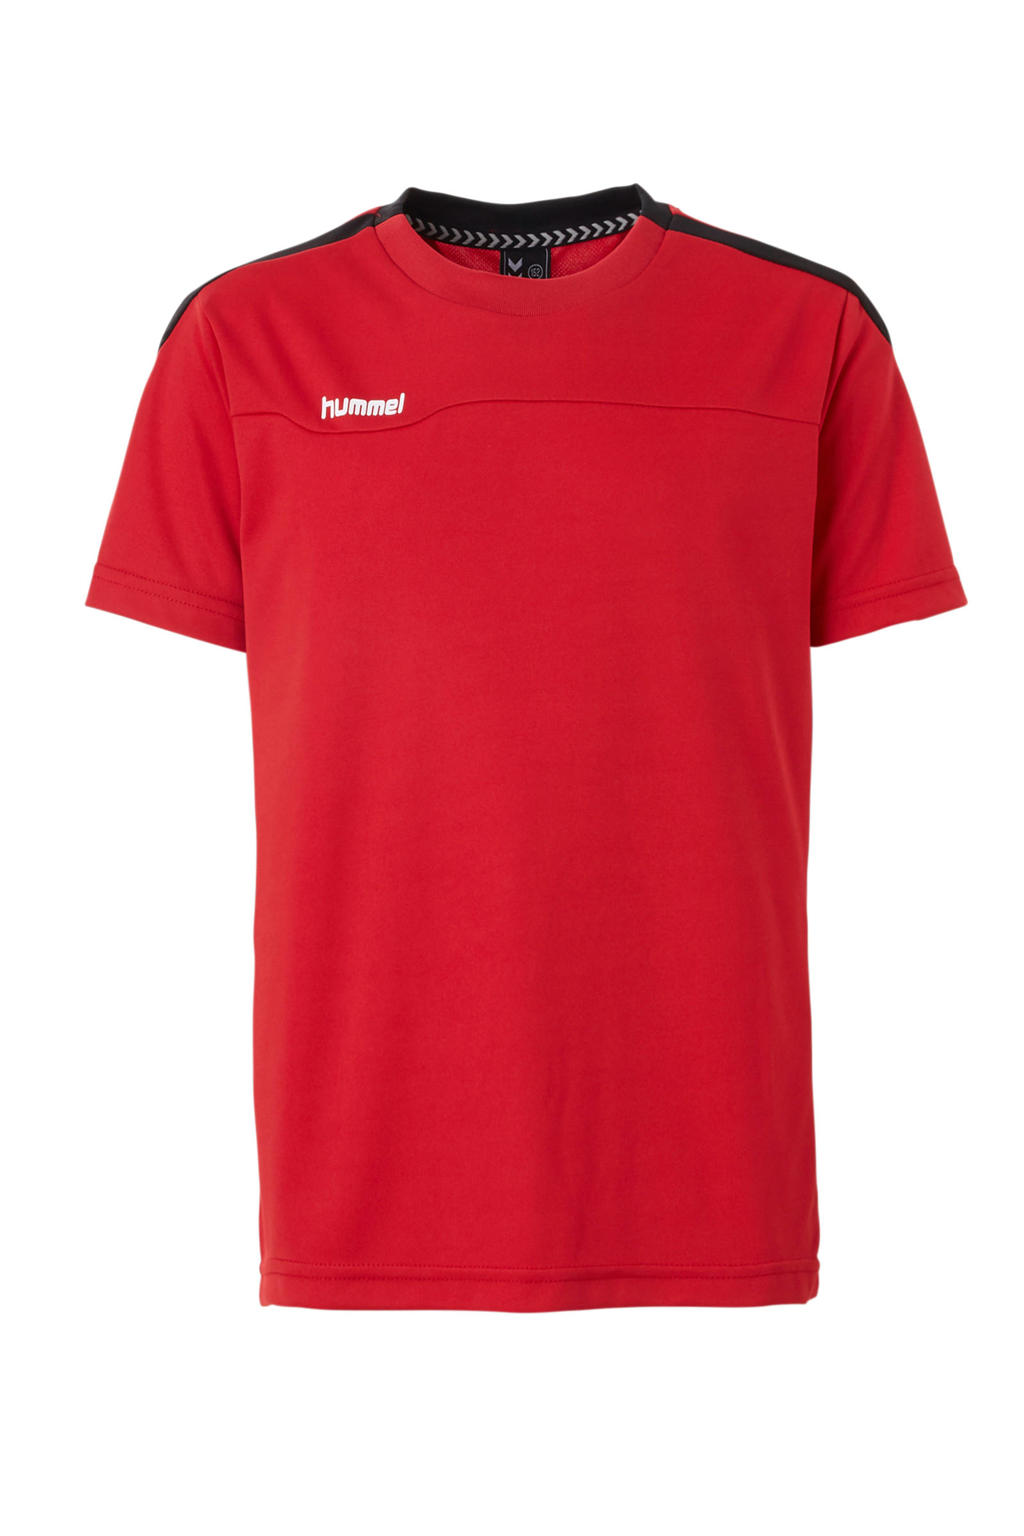 Rood, wit en zwarte jongens hummel sport T-shirt van polyester met korte mouwen en ronde hals